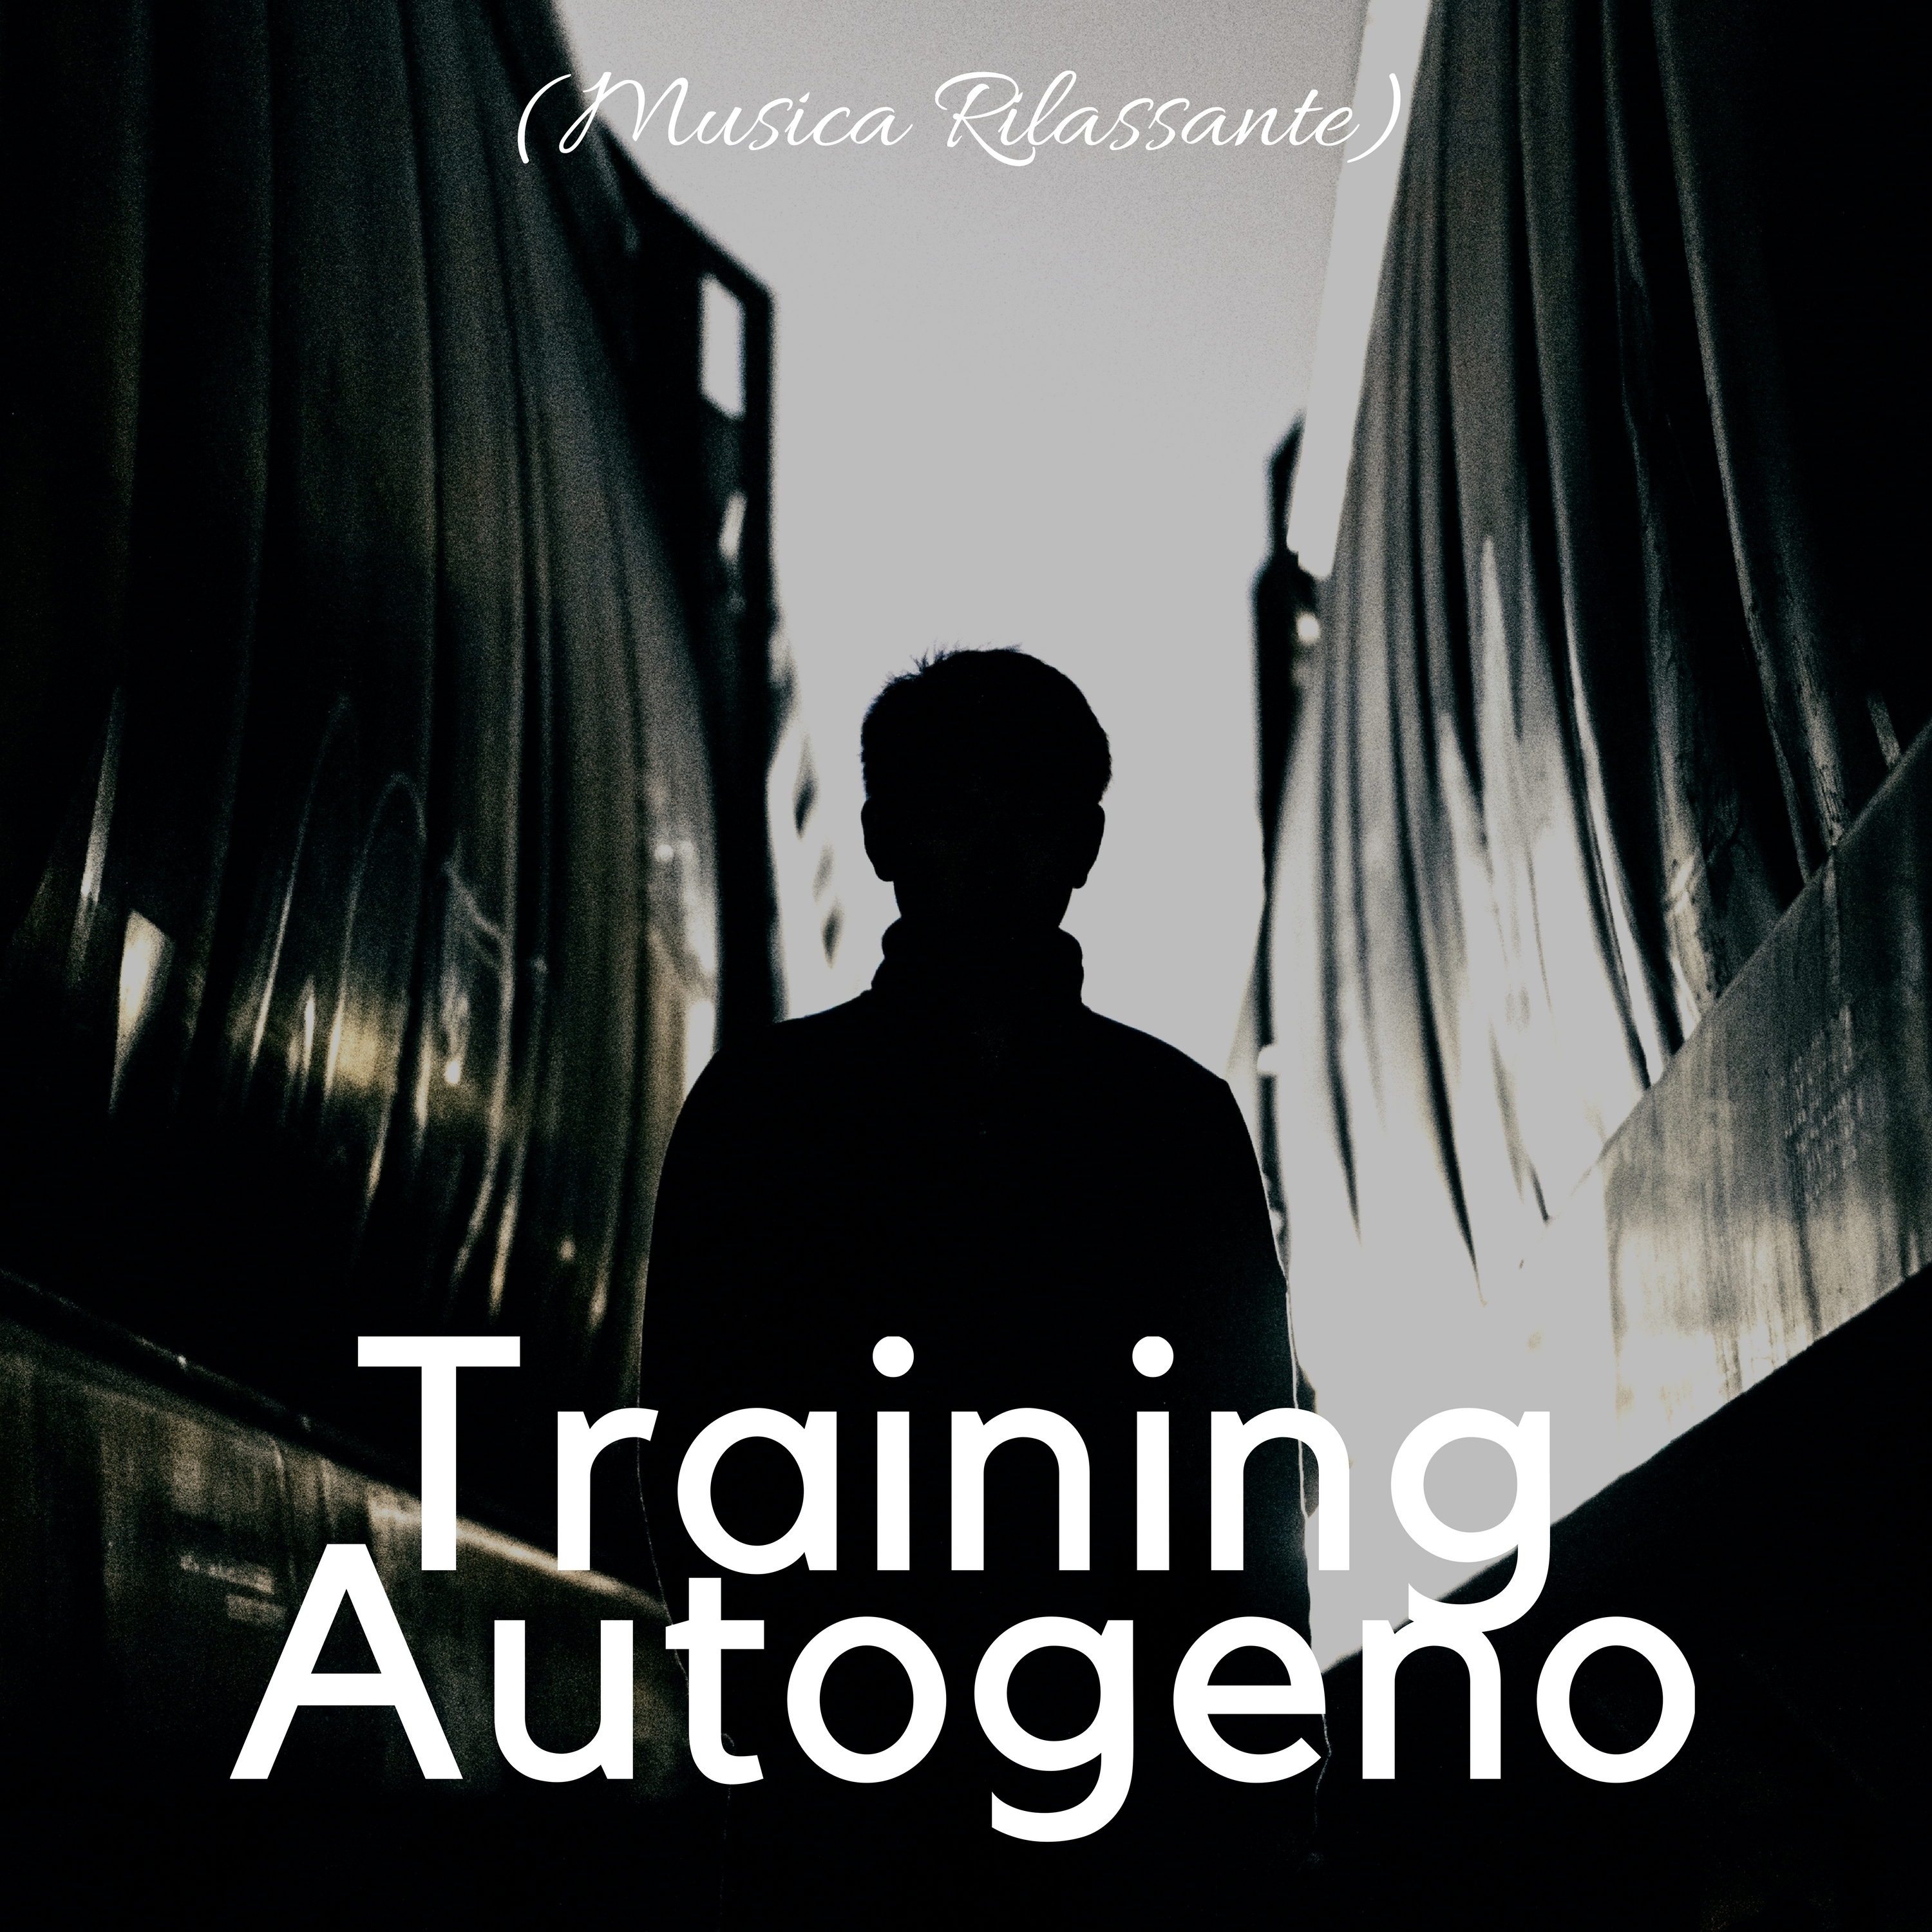 Training Autogeno (Musica Rilassante) - Musica per Calma Profonda, Ridurre lo Stress, Sentirsi al Sicuro